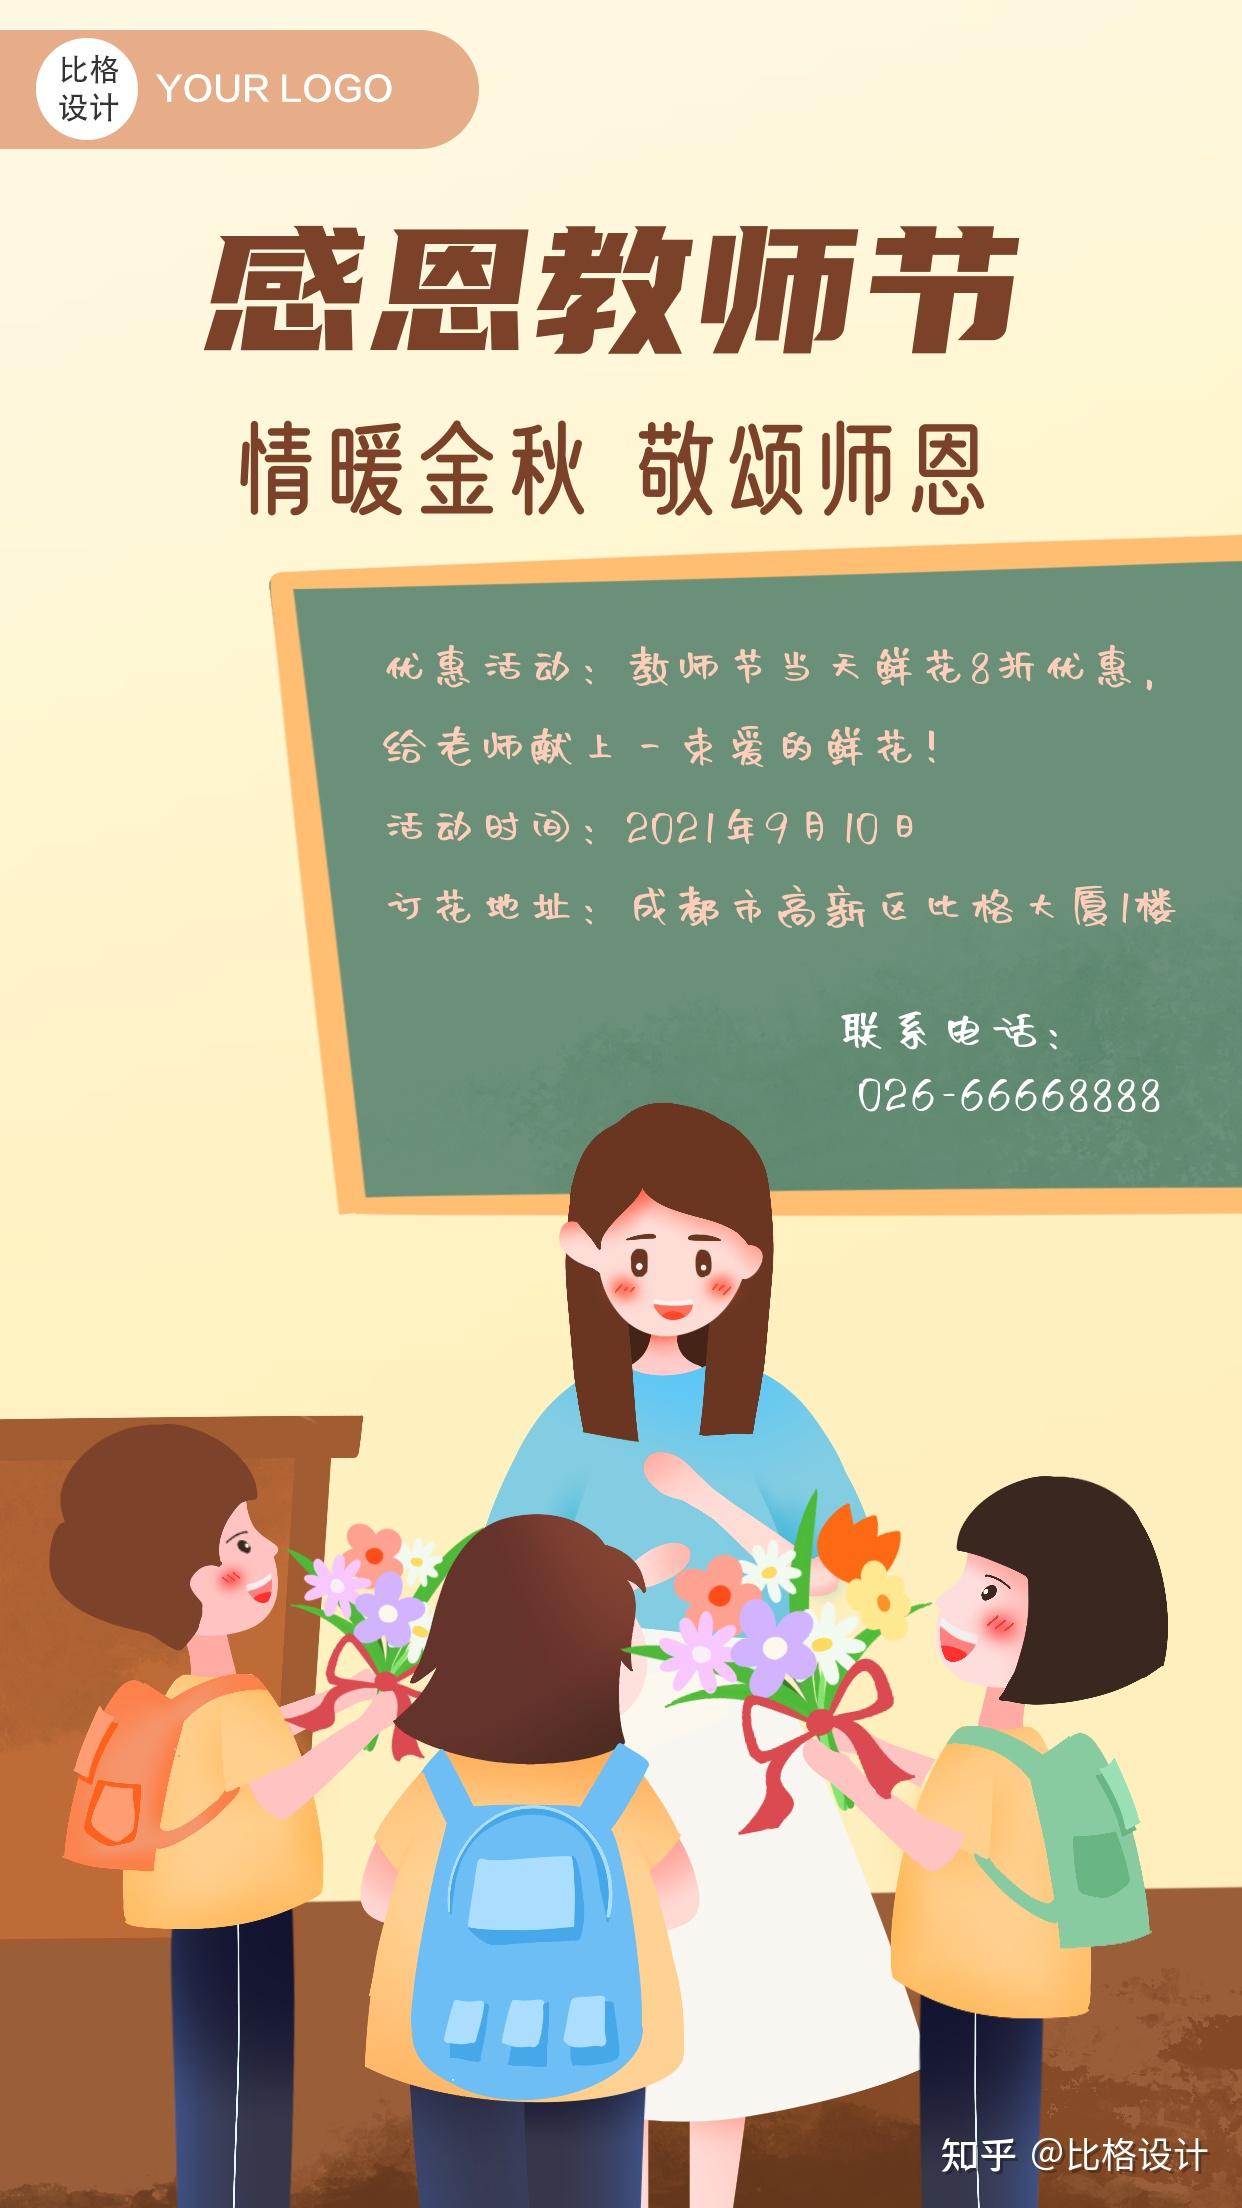 2021教师节祝福语海报精选春蚕到死丝方尽蜡炬成灰泪始干